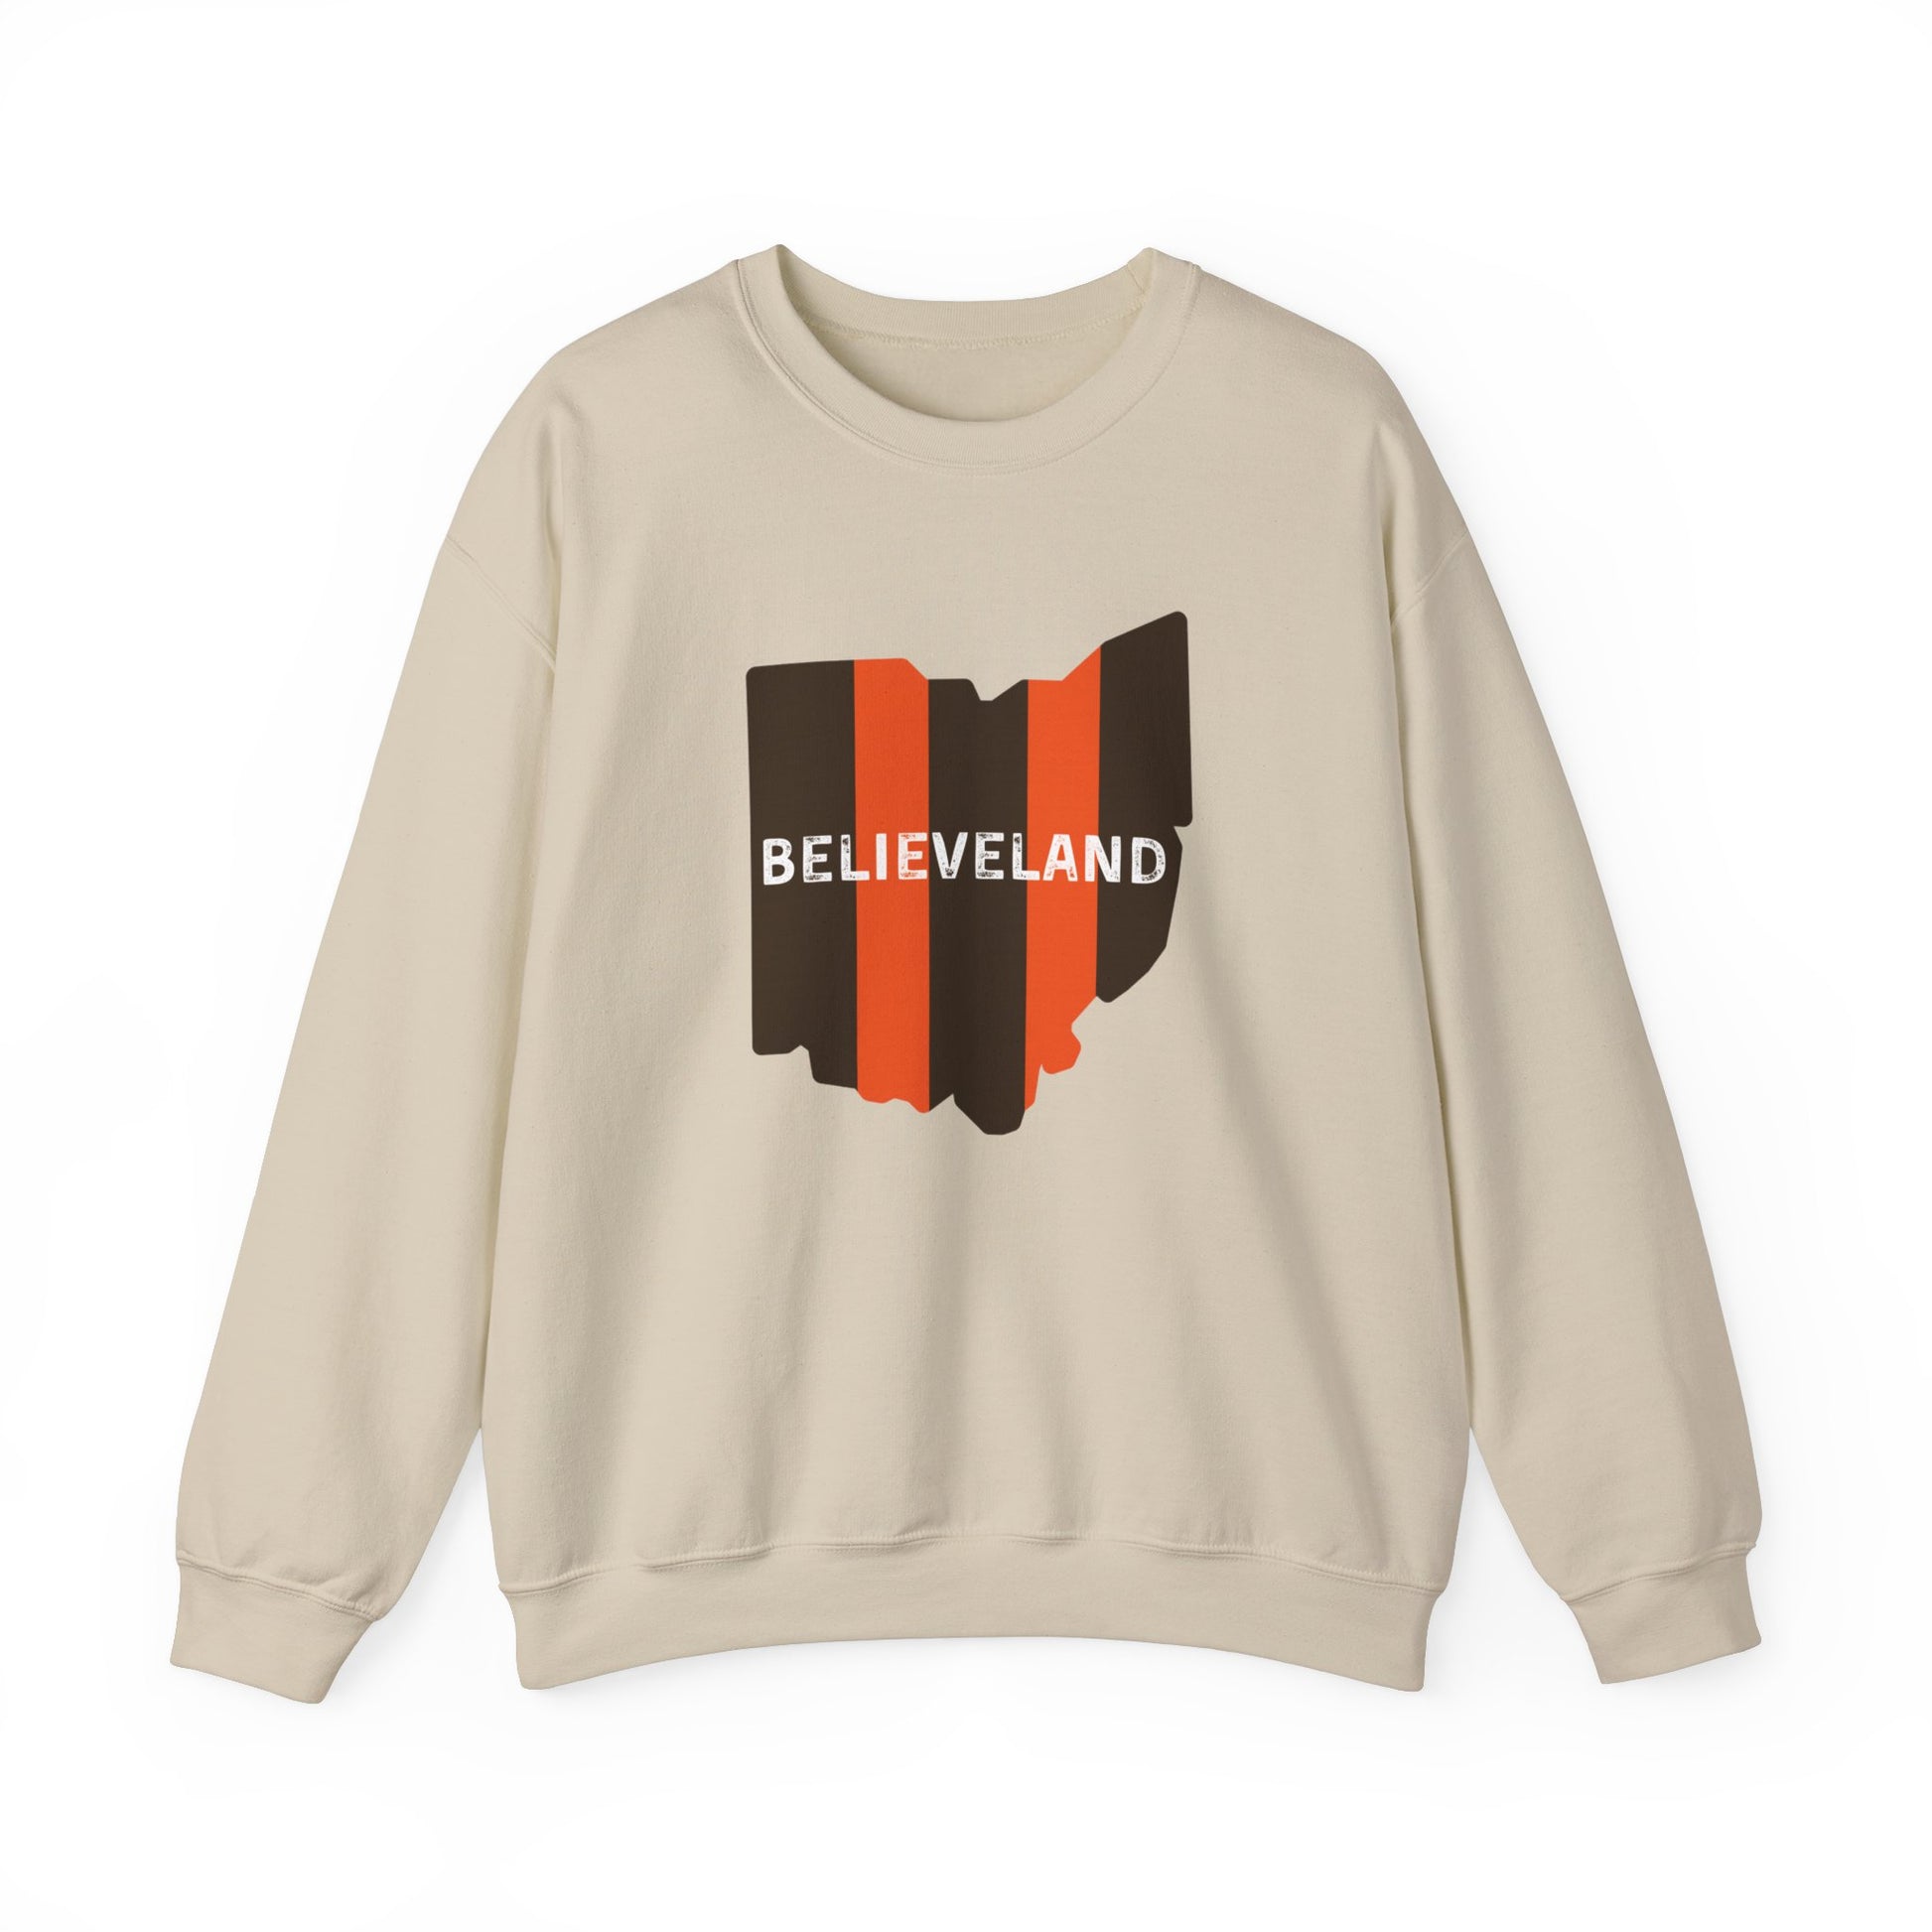 Believeland Crewneck Sweatshirt - Home Field Fan